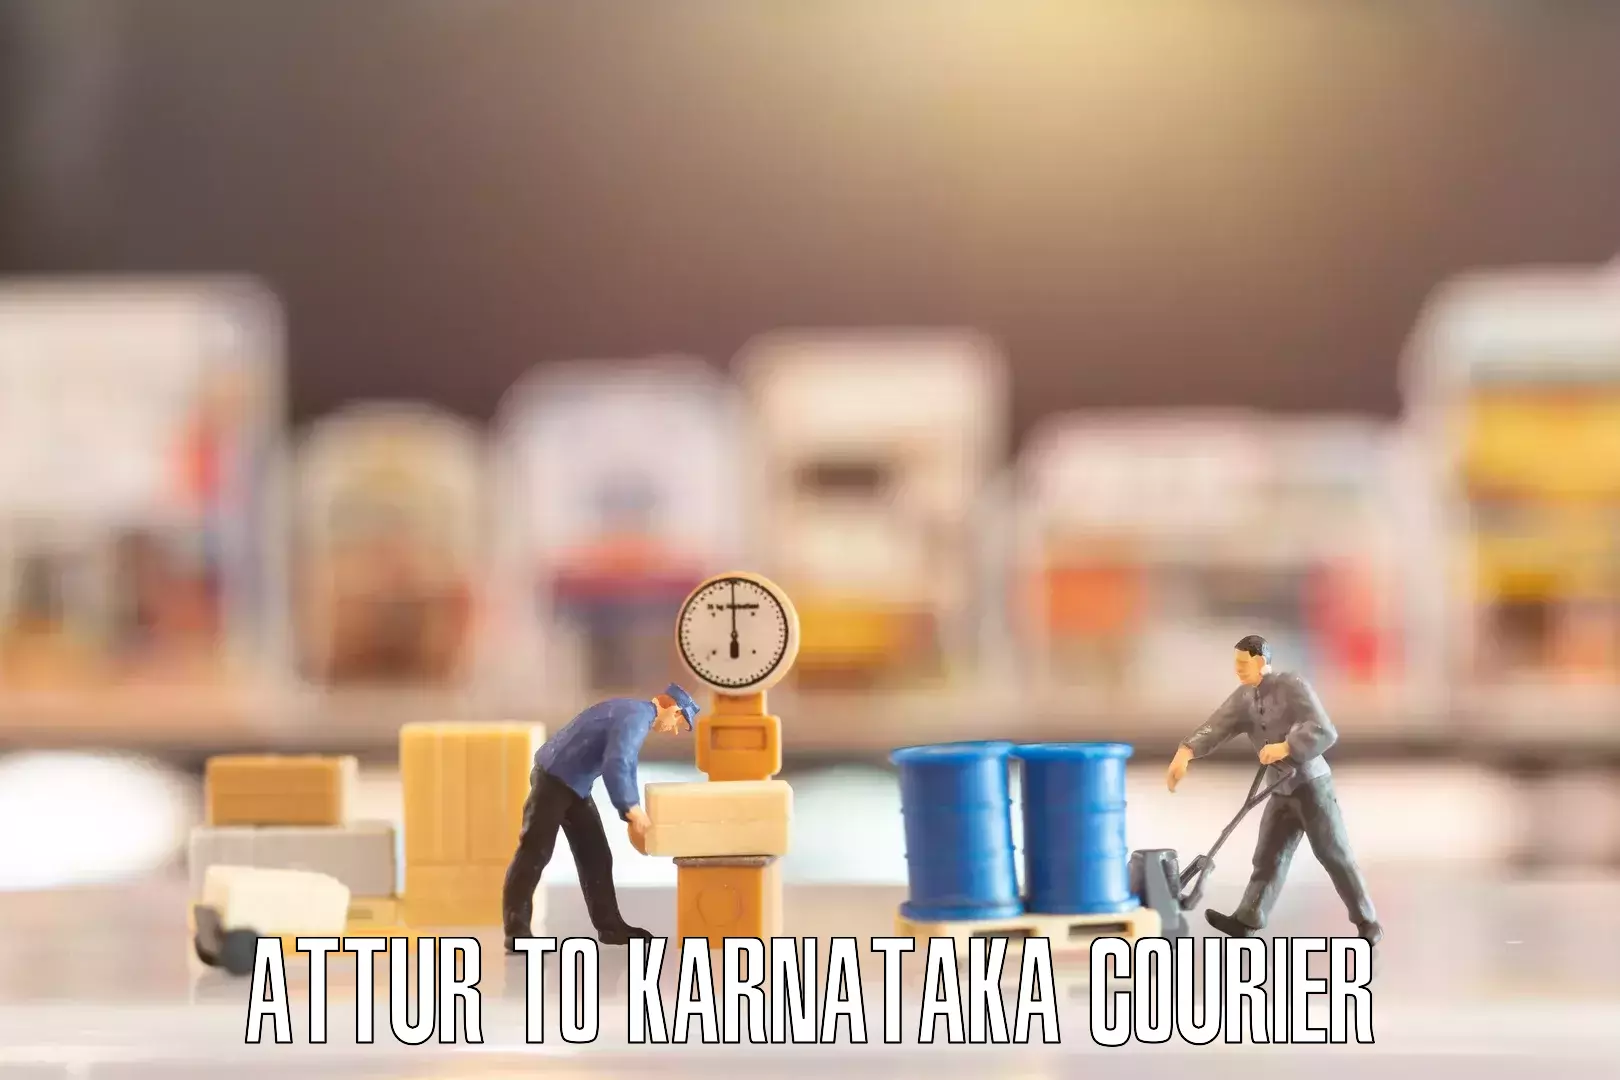 Door-to-door relocation services Attur to Khanapur Karnataka